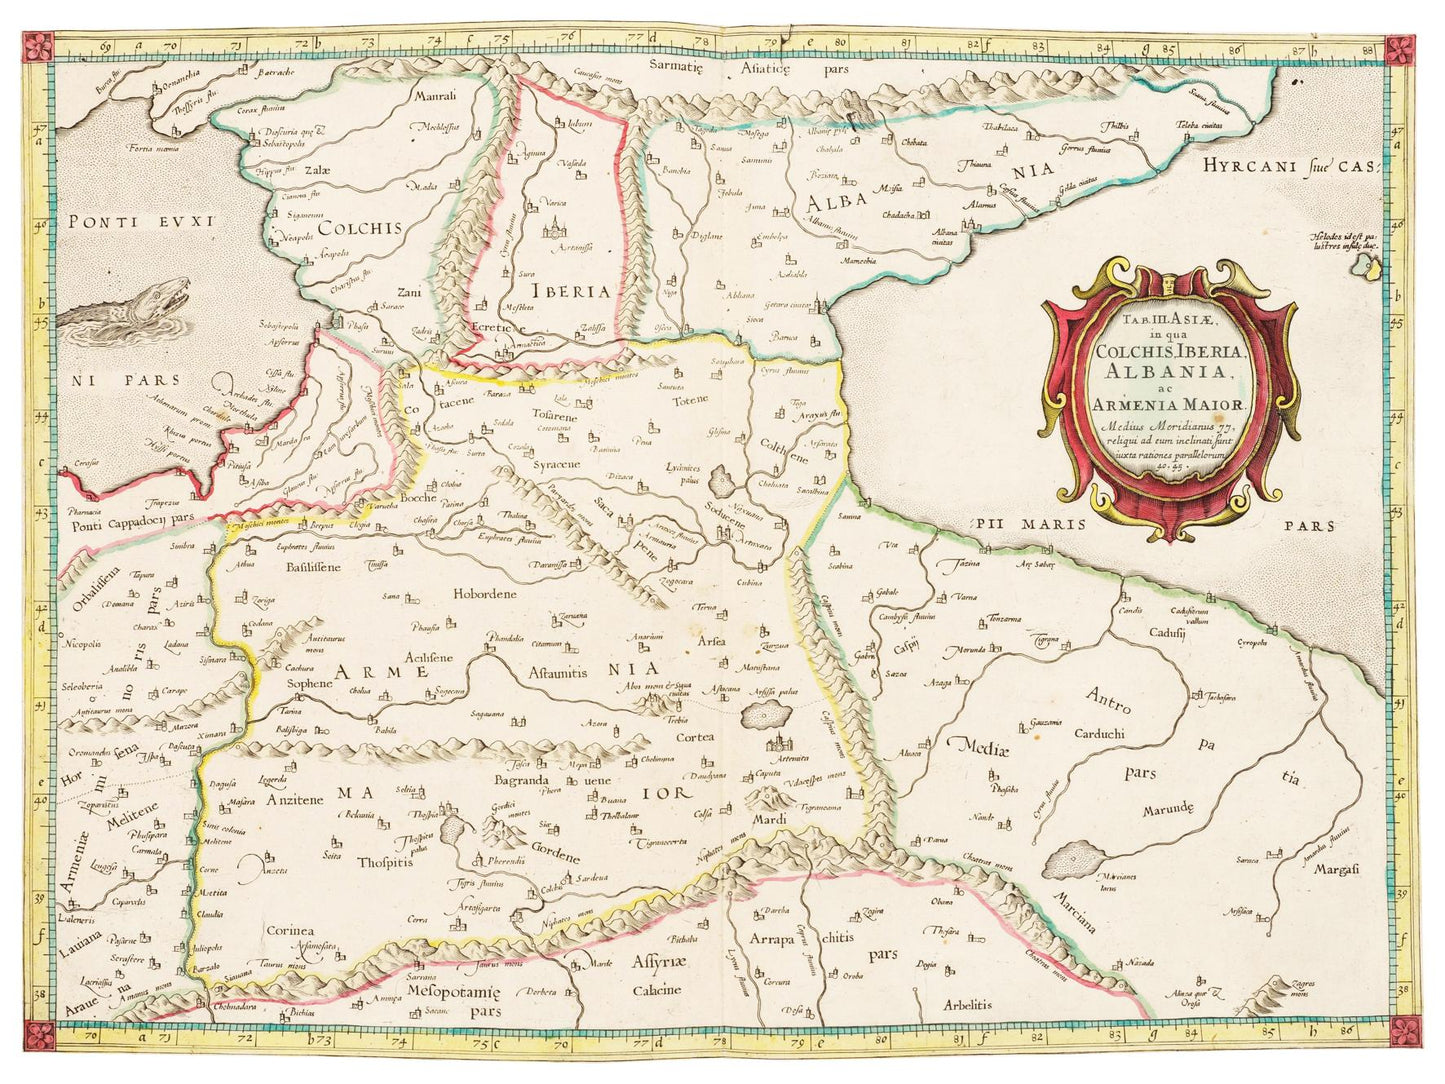 Historische Landkarte Kaukasus um 1704